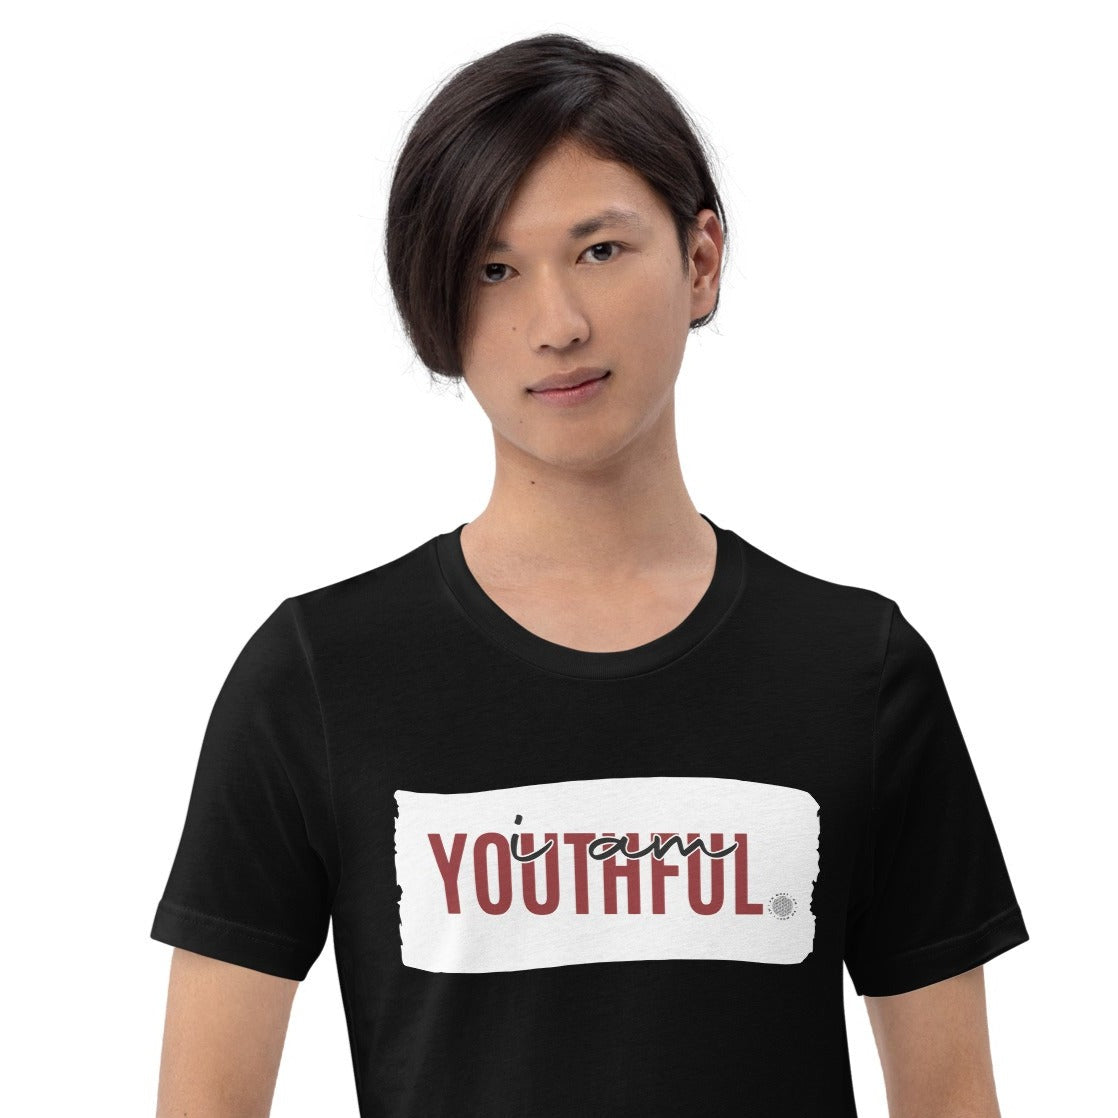 I Am Youthful Adult Unisex T-Shirt black